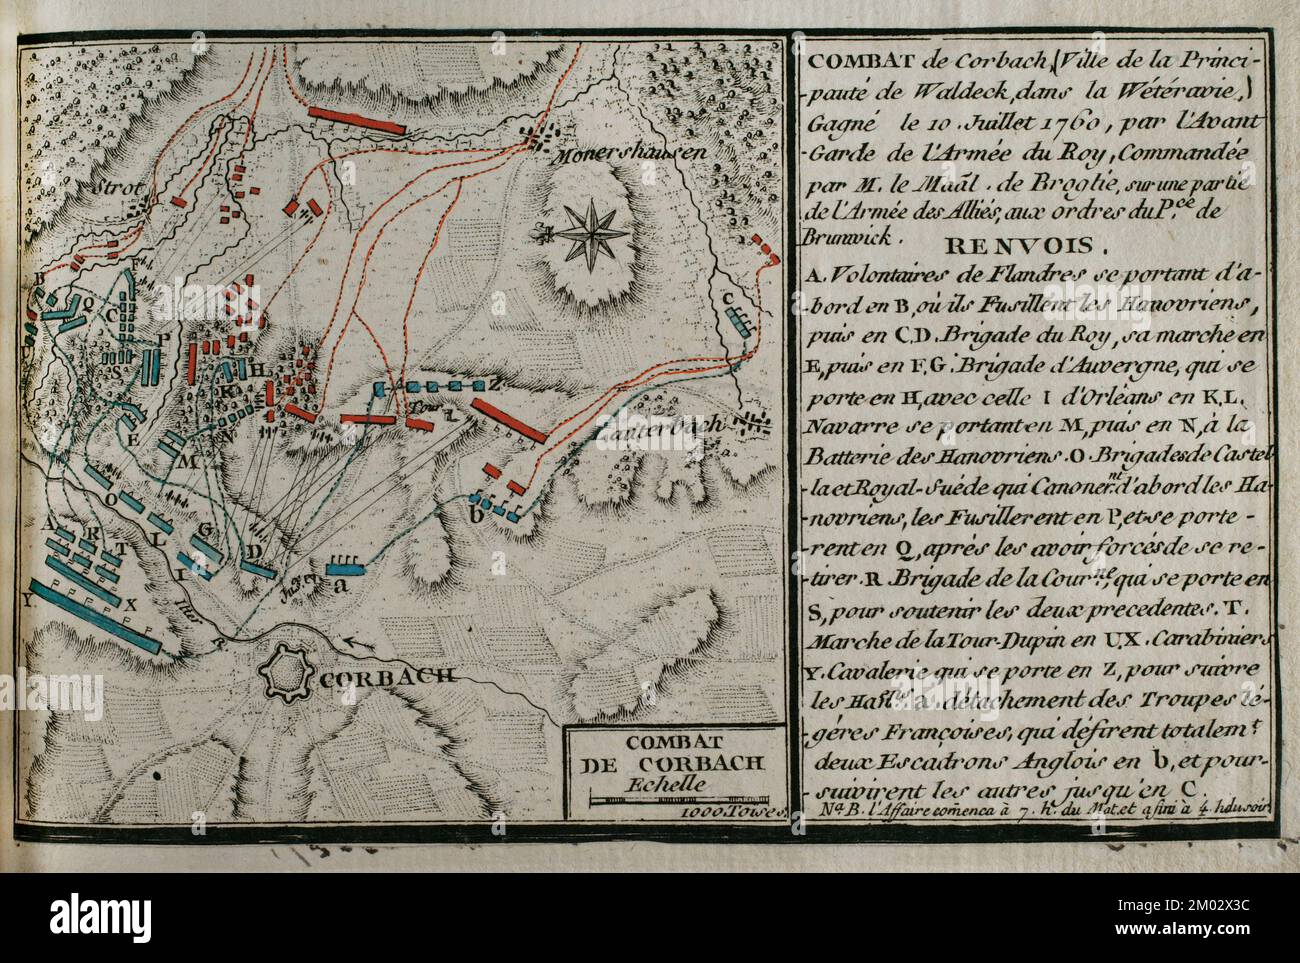 Guerra dei sette anni (1756-1763). Mappa della Battaglia di Corbach o Korbach (10 luglio 1760). Assia settentrionale, Germania. Le truppe francesi, guidate dal maresciallo Victor-Francesco, 2nd Duca di Broglie, sconfissero gli Hanoveriani, gli alleati britannici e gli Assiani, comandati da Ferdinando, Duca di Brunswick. Pubblicato nel 1765 dal cartografo Jean de Beaurain (1696-1771) come illustrazione della sua Grande carta della Germania, con gli eventi che si sono verificati durante la Guerra dei sette anni. Esercito alleato in rosso e esercito francese in blu. Incisione e incisione. Edizione francese, 1765. Biblioteca storica militare di Barcellona (Biblioteca Foto Stock